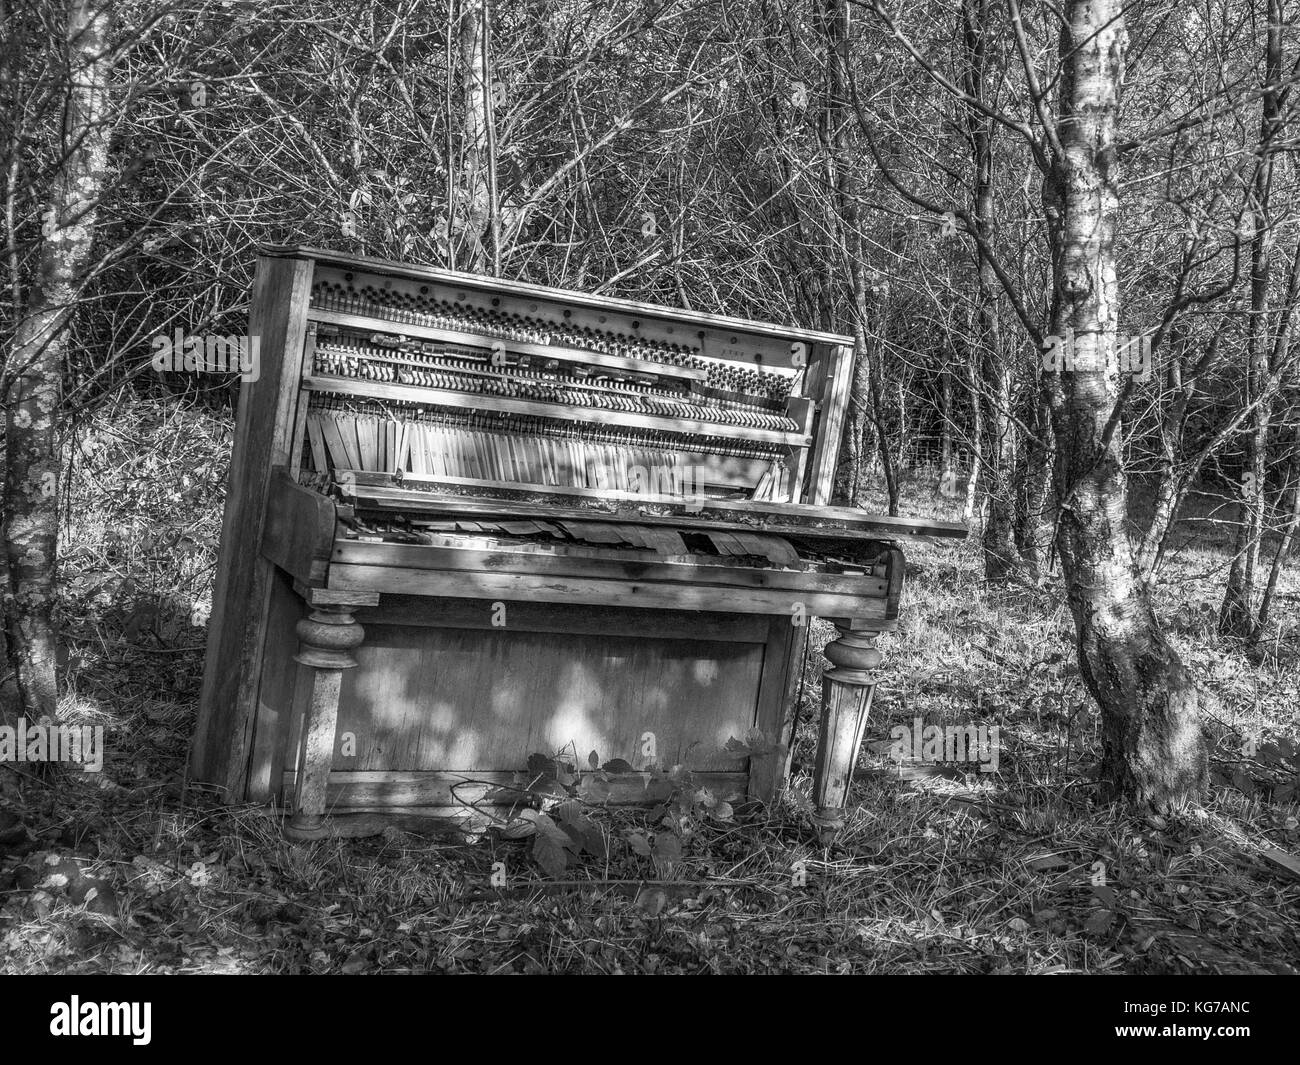 Altes Klavier in den walisischen Wäldern, Monochrome abgebrochen Stockfoto